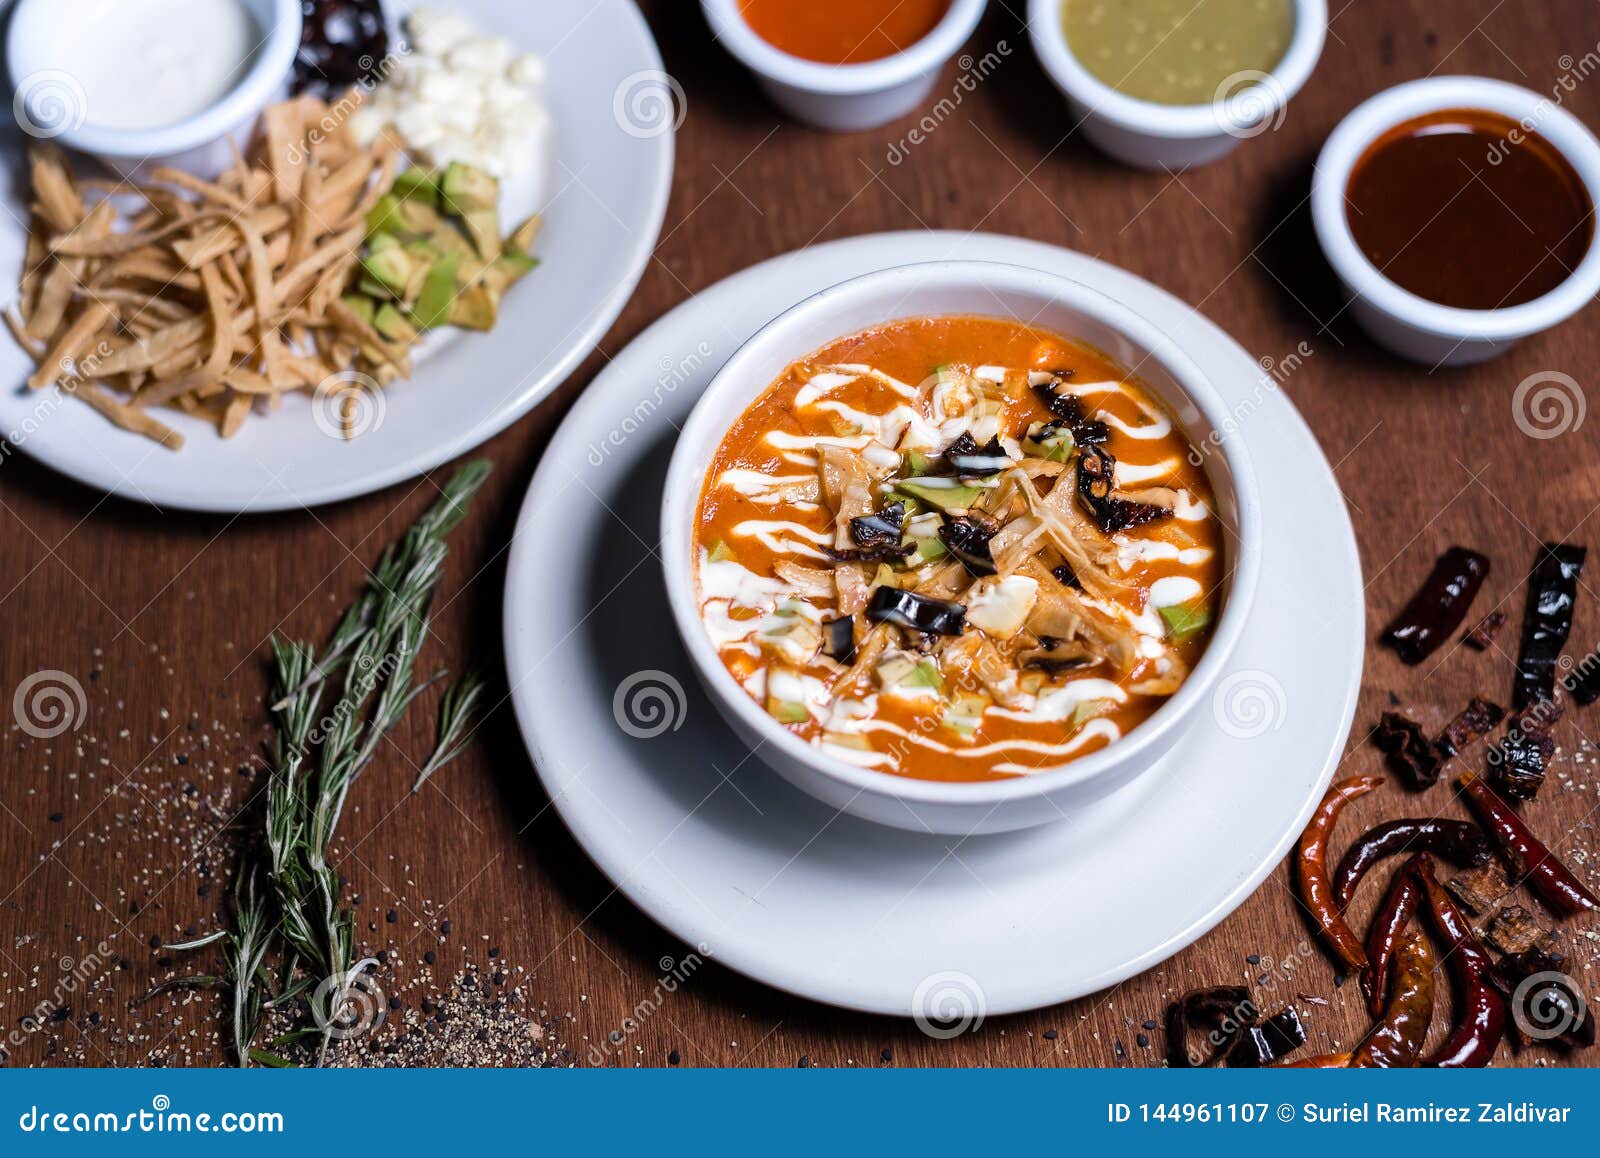 sopa de tortilla - mexican food soup